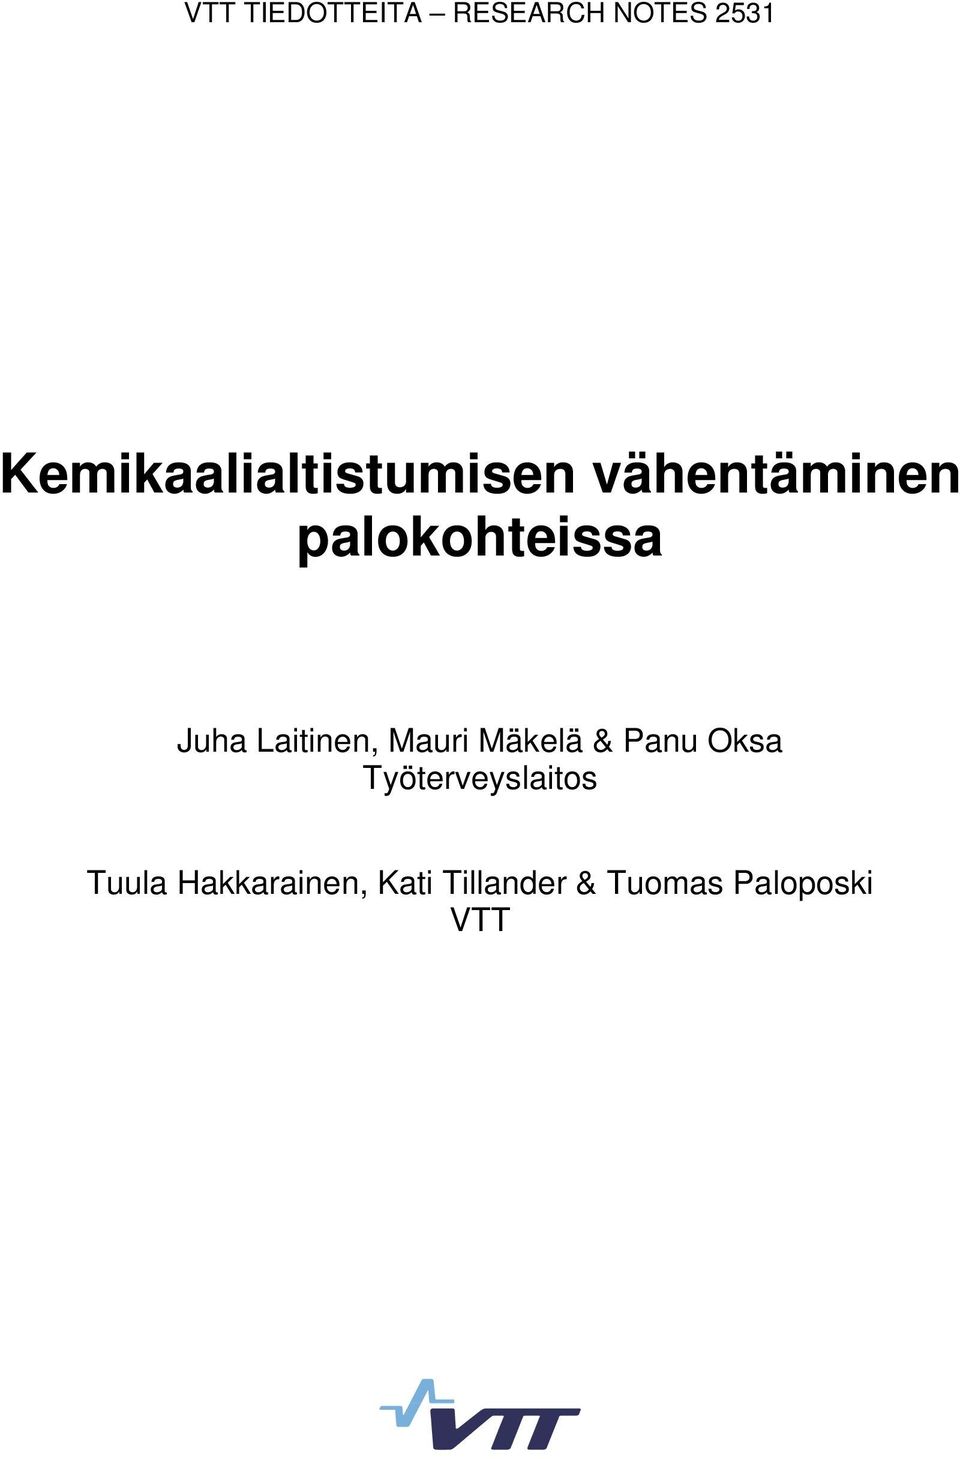 Juha Laitinen, Mauri Mäkelä & Panu Oksa